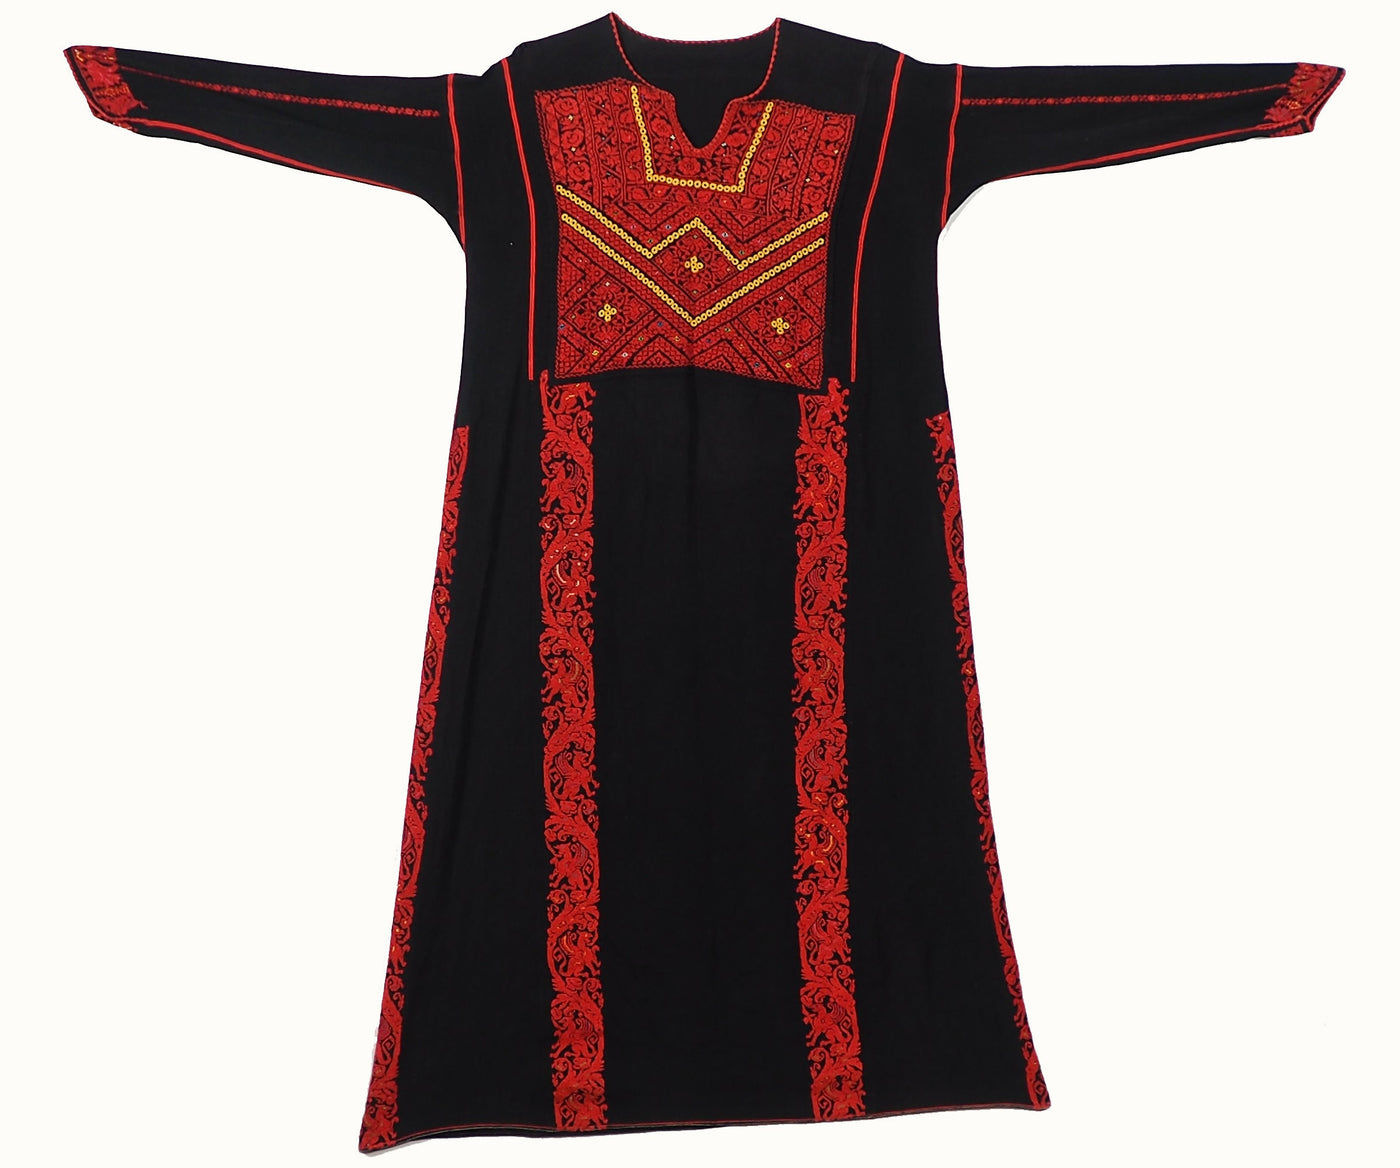 Antik Orient Beduin Palästina frauen Kleid Seide hand bestickte kostüm palästinensische ROBE  ethnischen Jacke Kreuzstich Stickerei Nr:22/1  Orientsbazar   